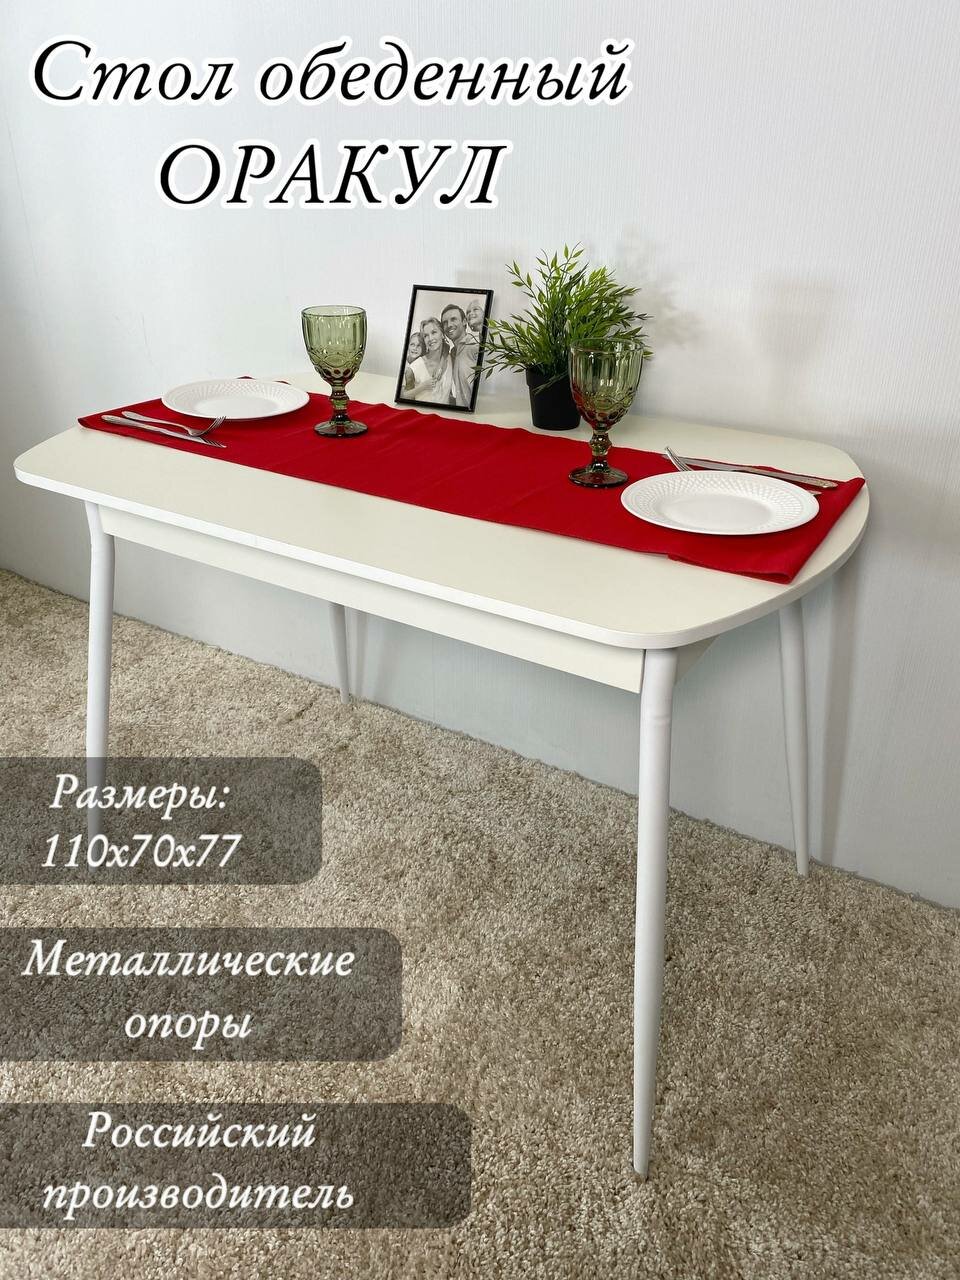 Стол кухонный Оракул / стол обеденный / стол на кухню/стол в столовую, кухонный столик, нераздвижной, почти собран, Д110 х Ш70 хВ77, белый